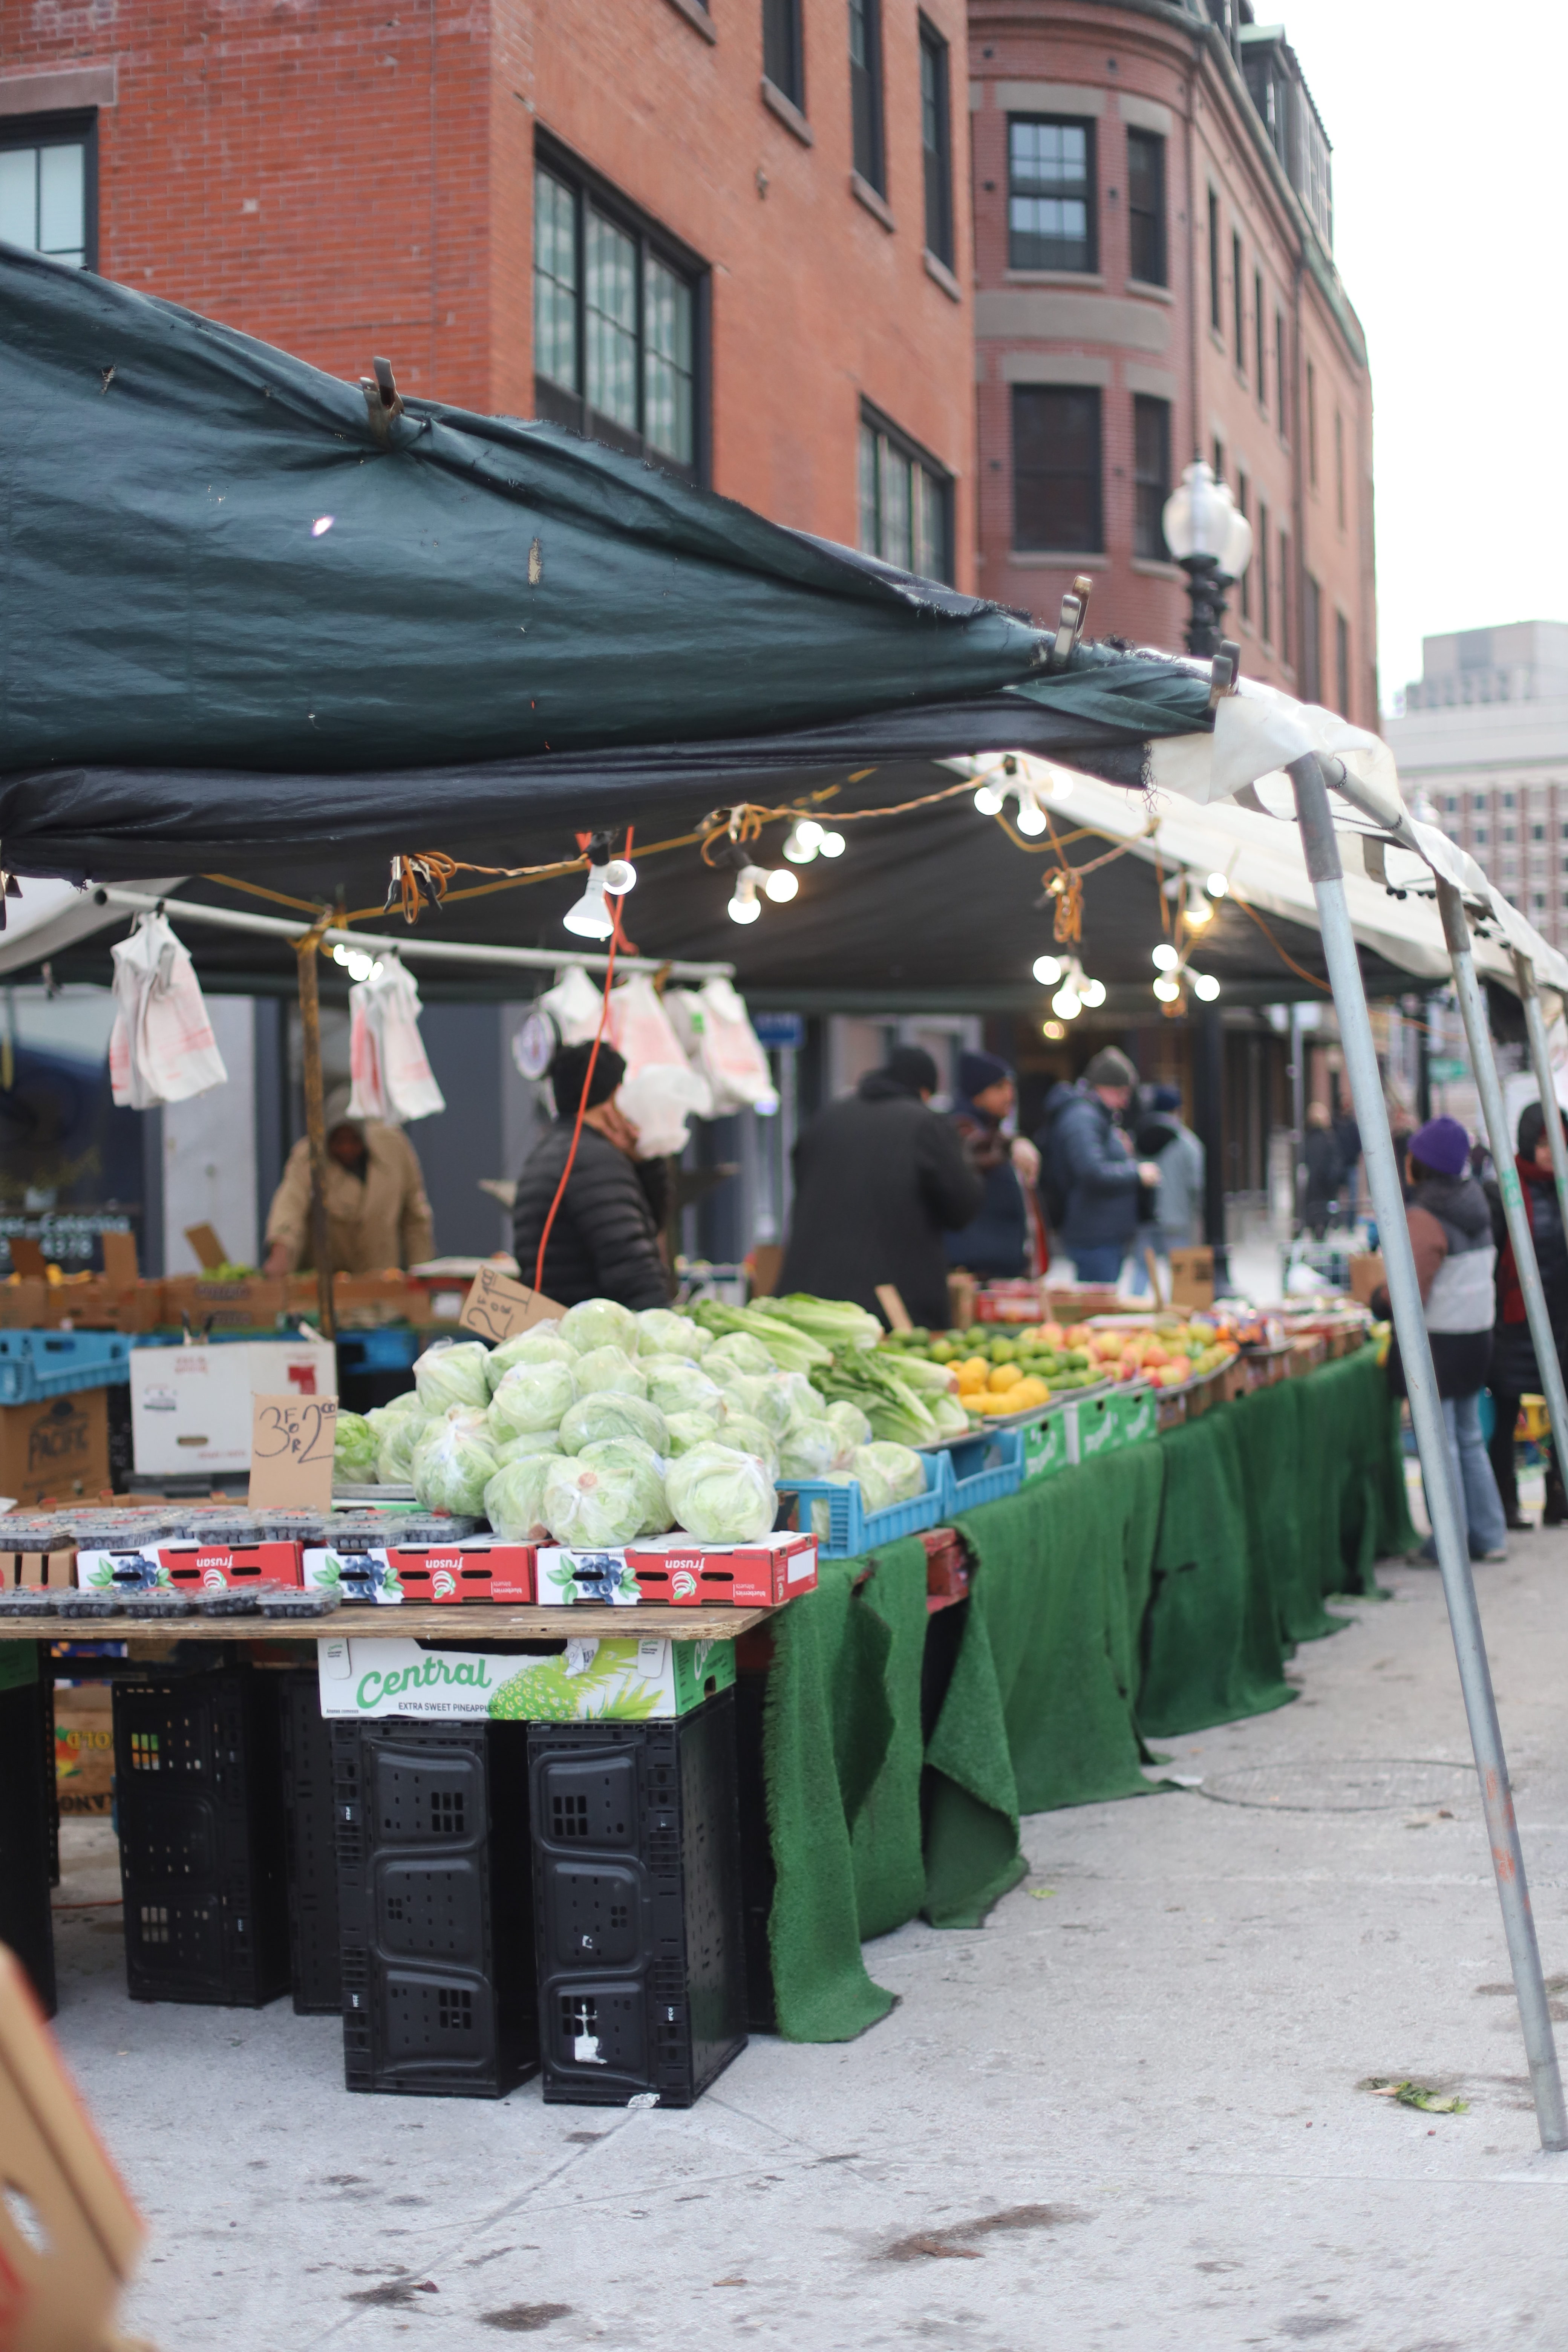 Farmers Markets in Boston